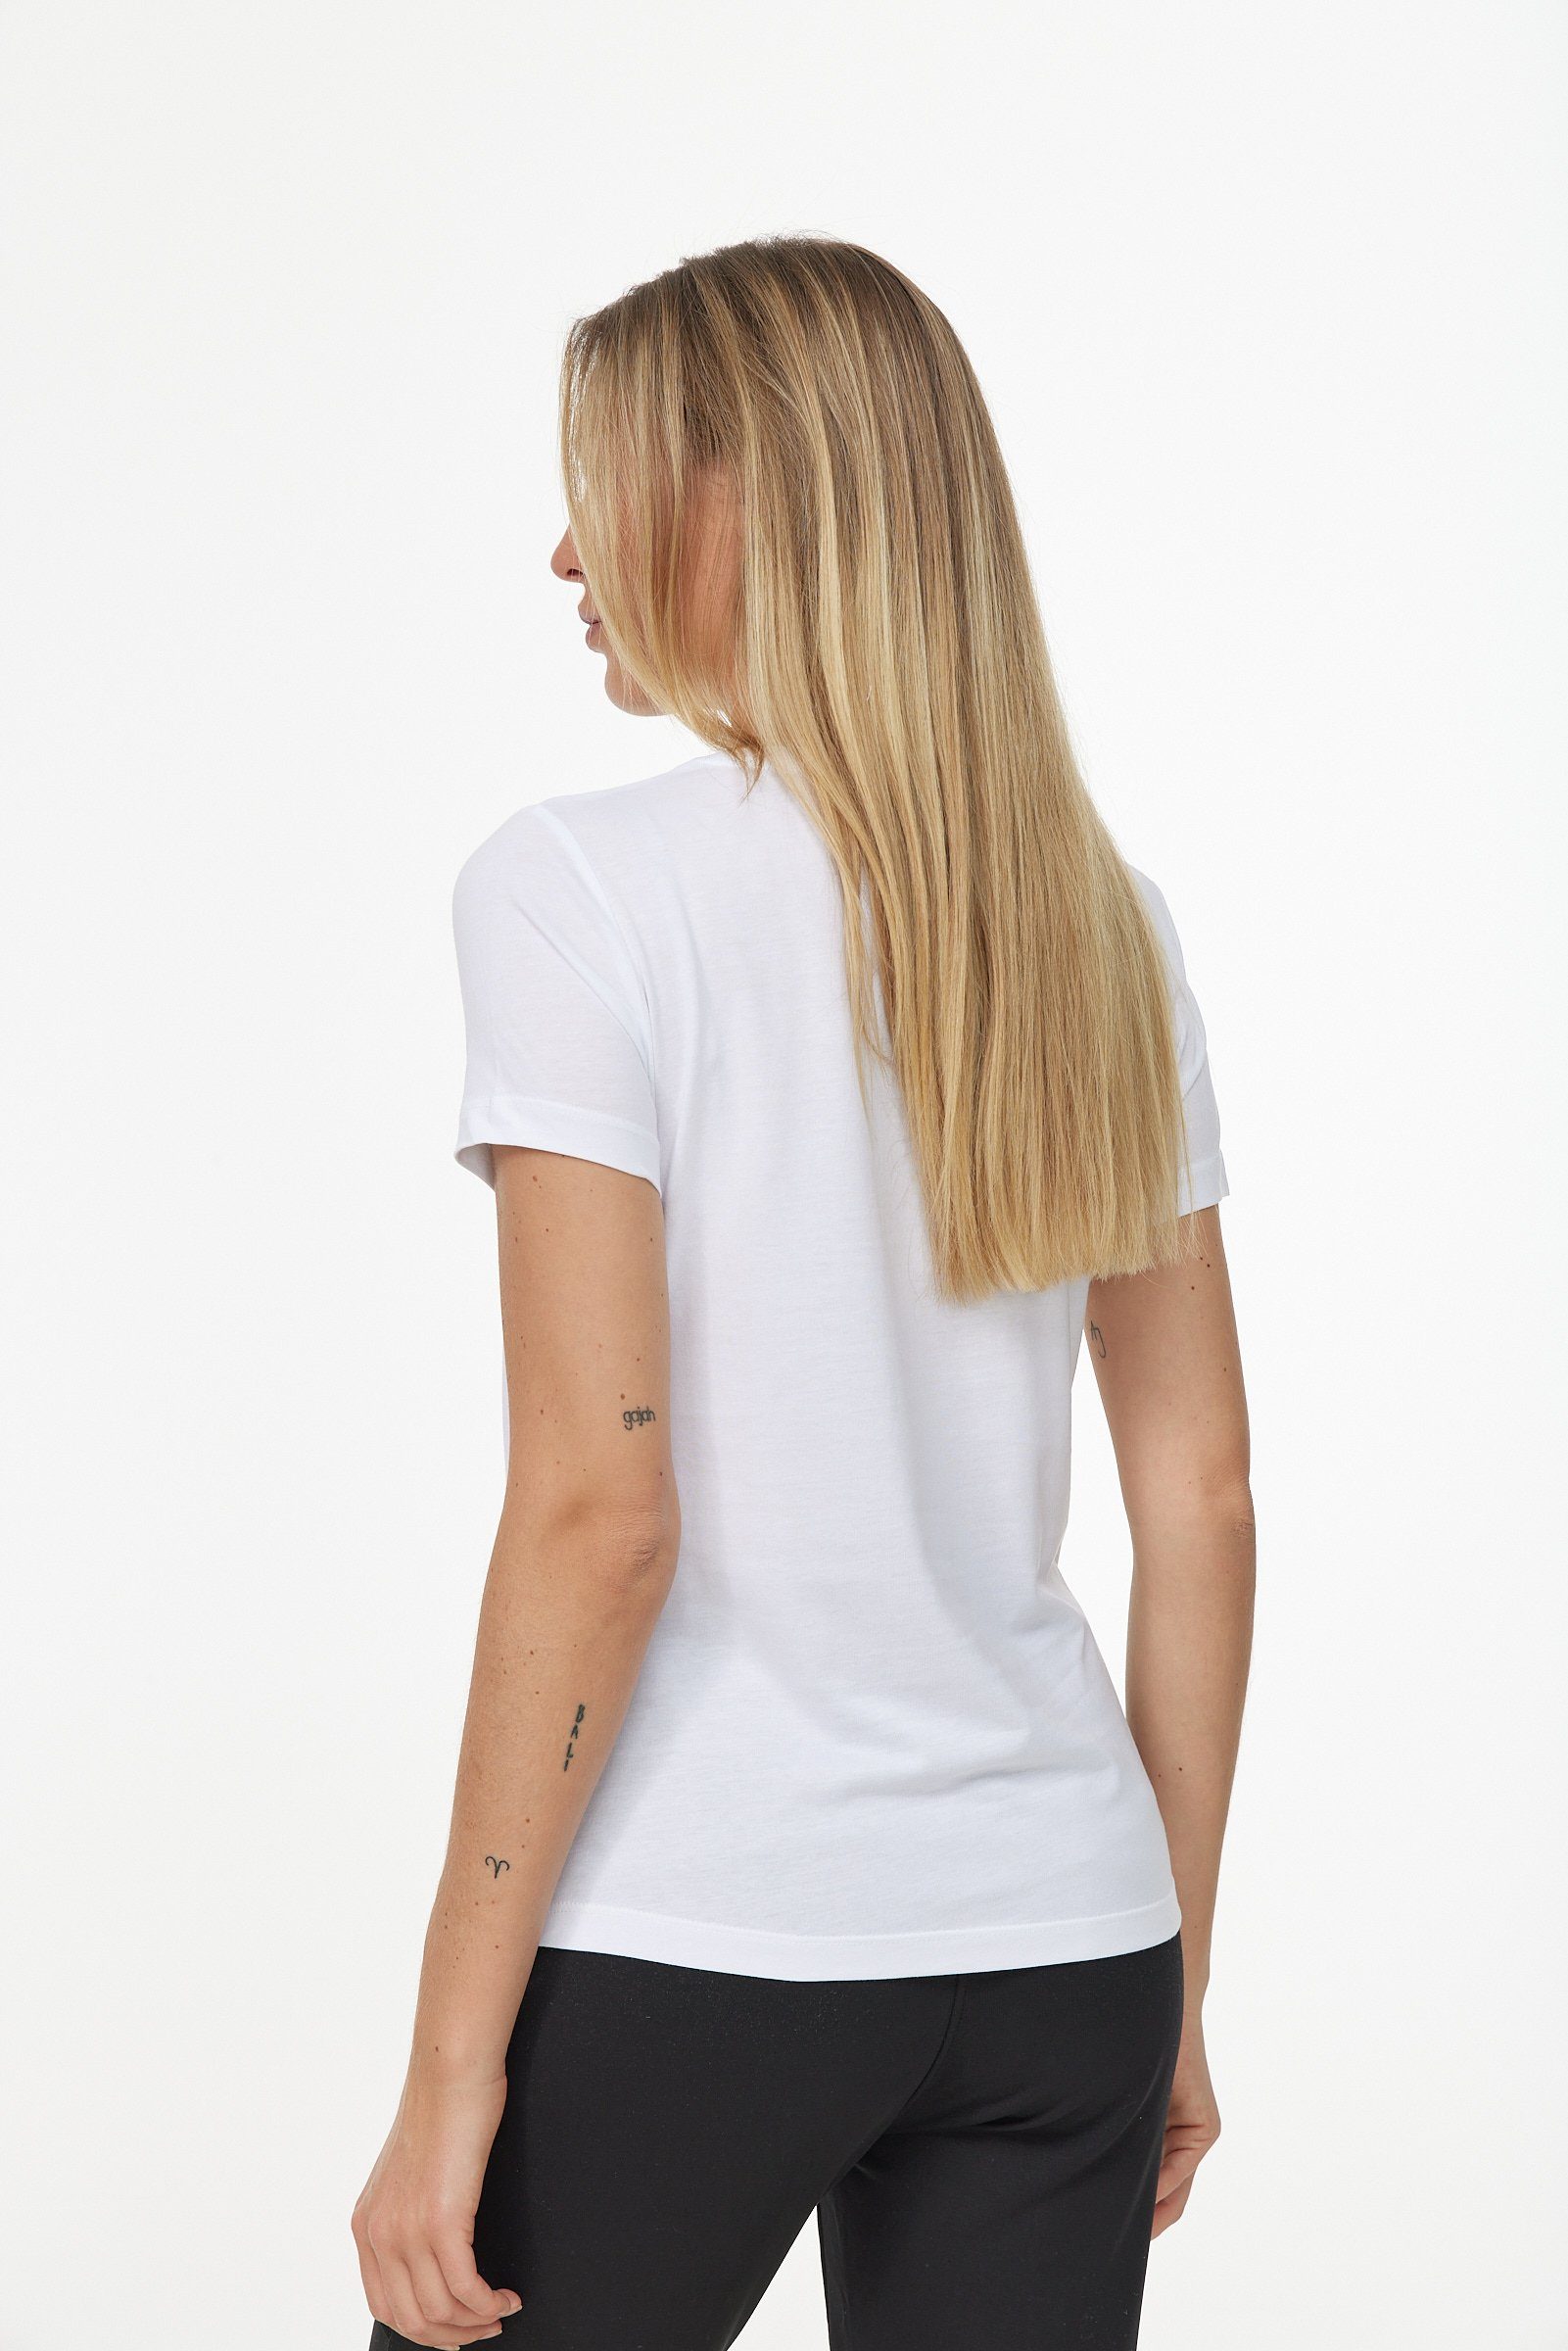 Decay T-Shirt in weiß-schwarz Design schlichtem